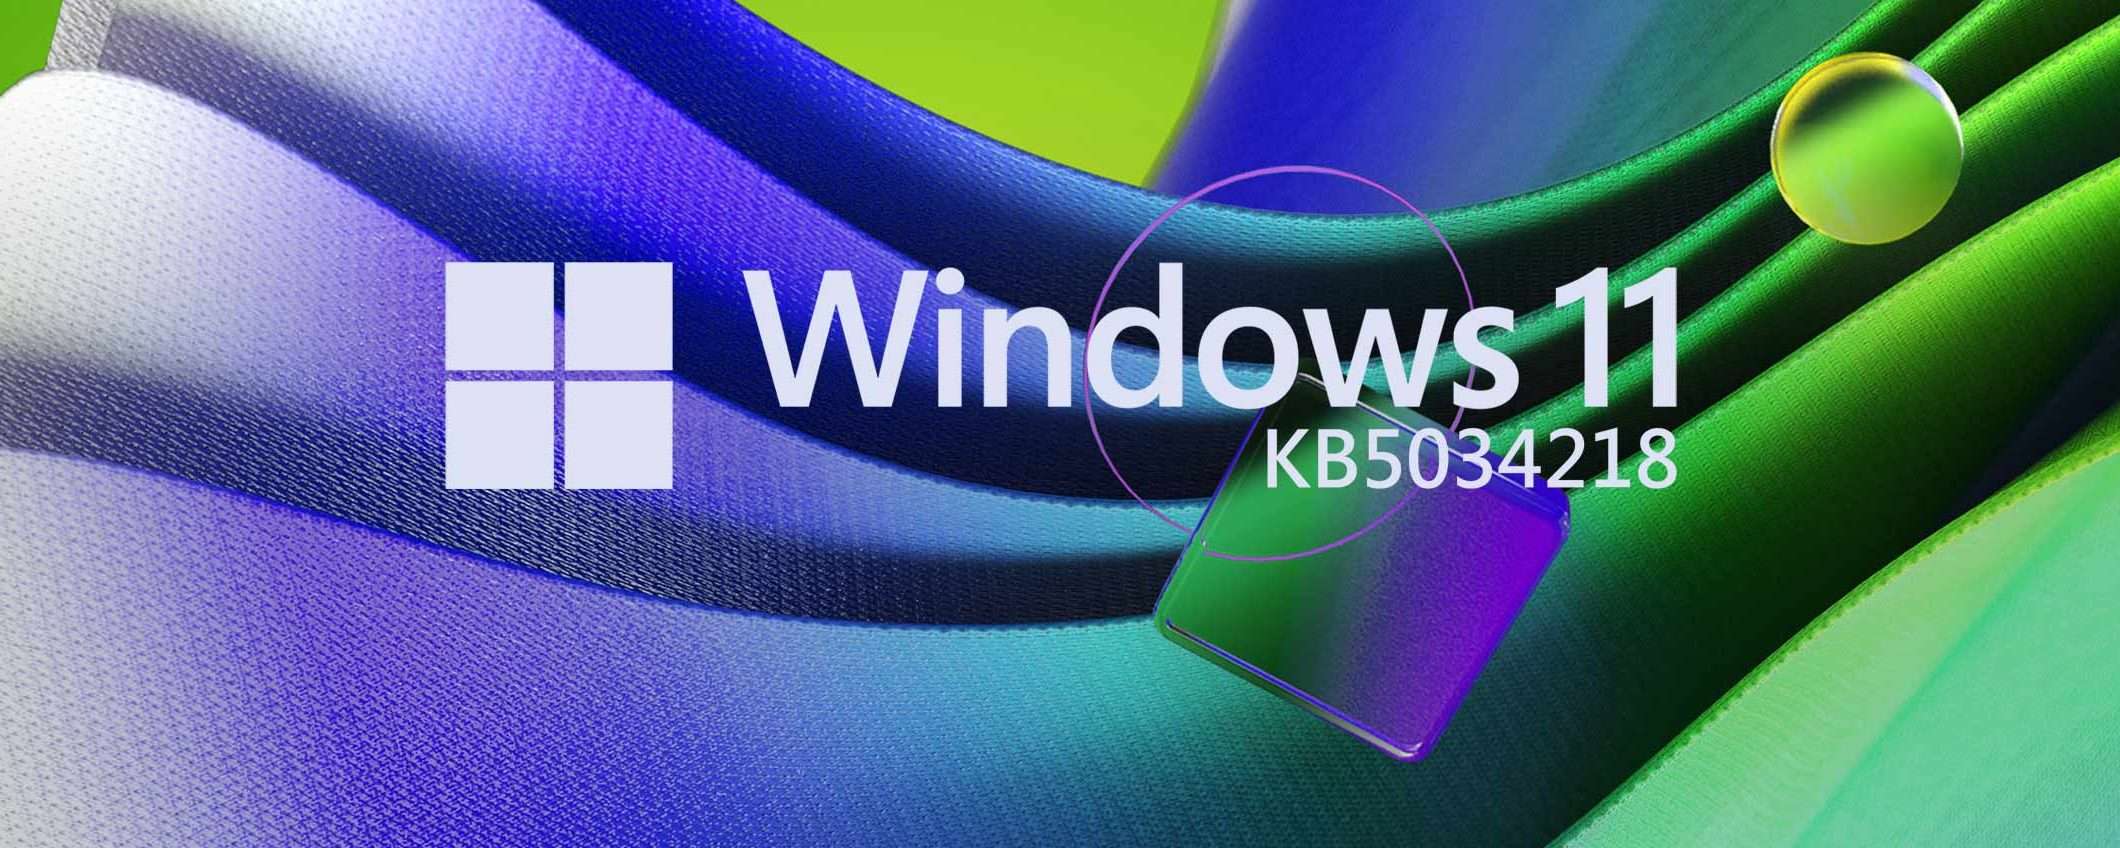 Windows 11 KB5034218 (Beta): novità per Snap Layout